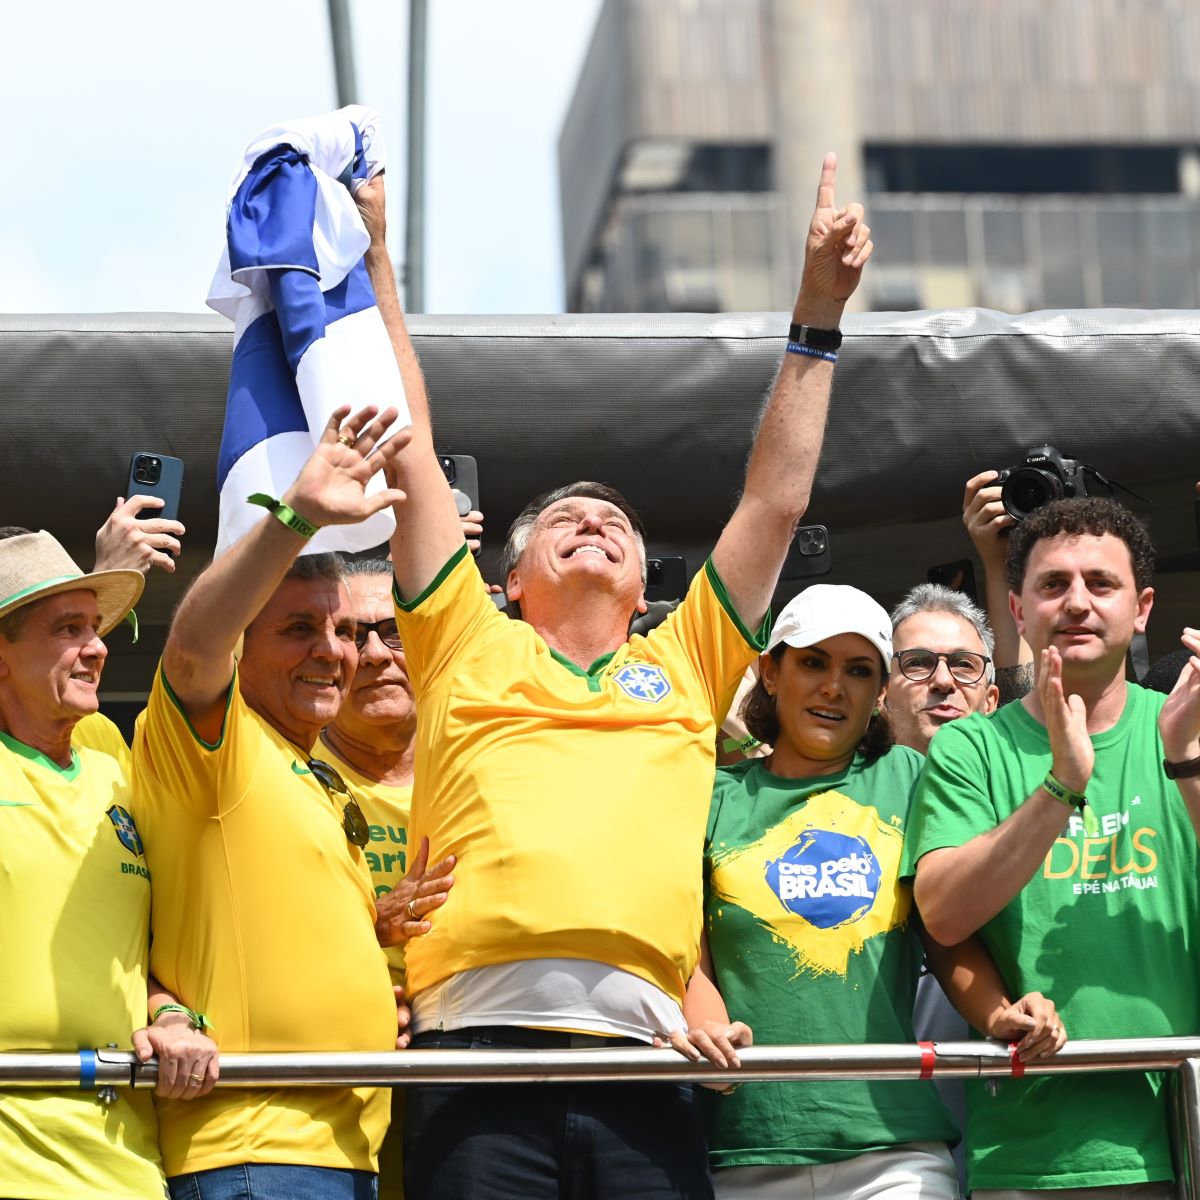 Em seu discurso, Bolsonaro falou sobre a "minuta do golpe" que foi encontrada em uma gaveta pela Polícia Federal